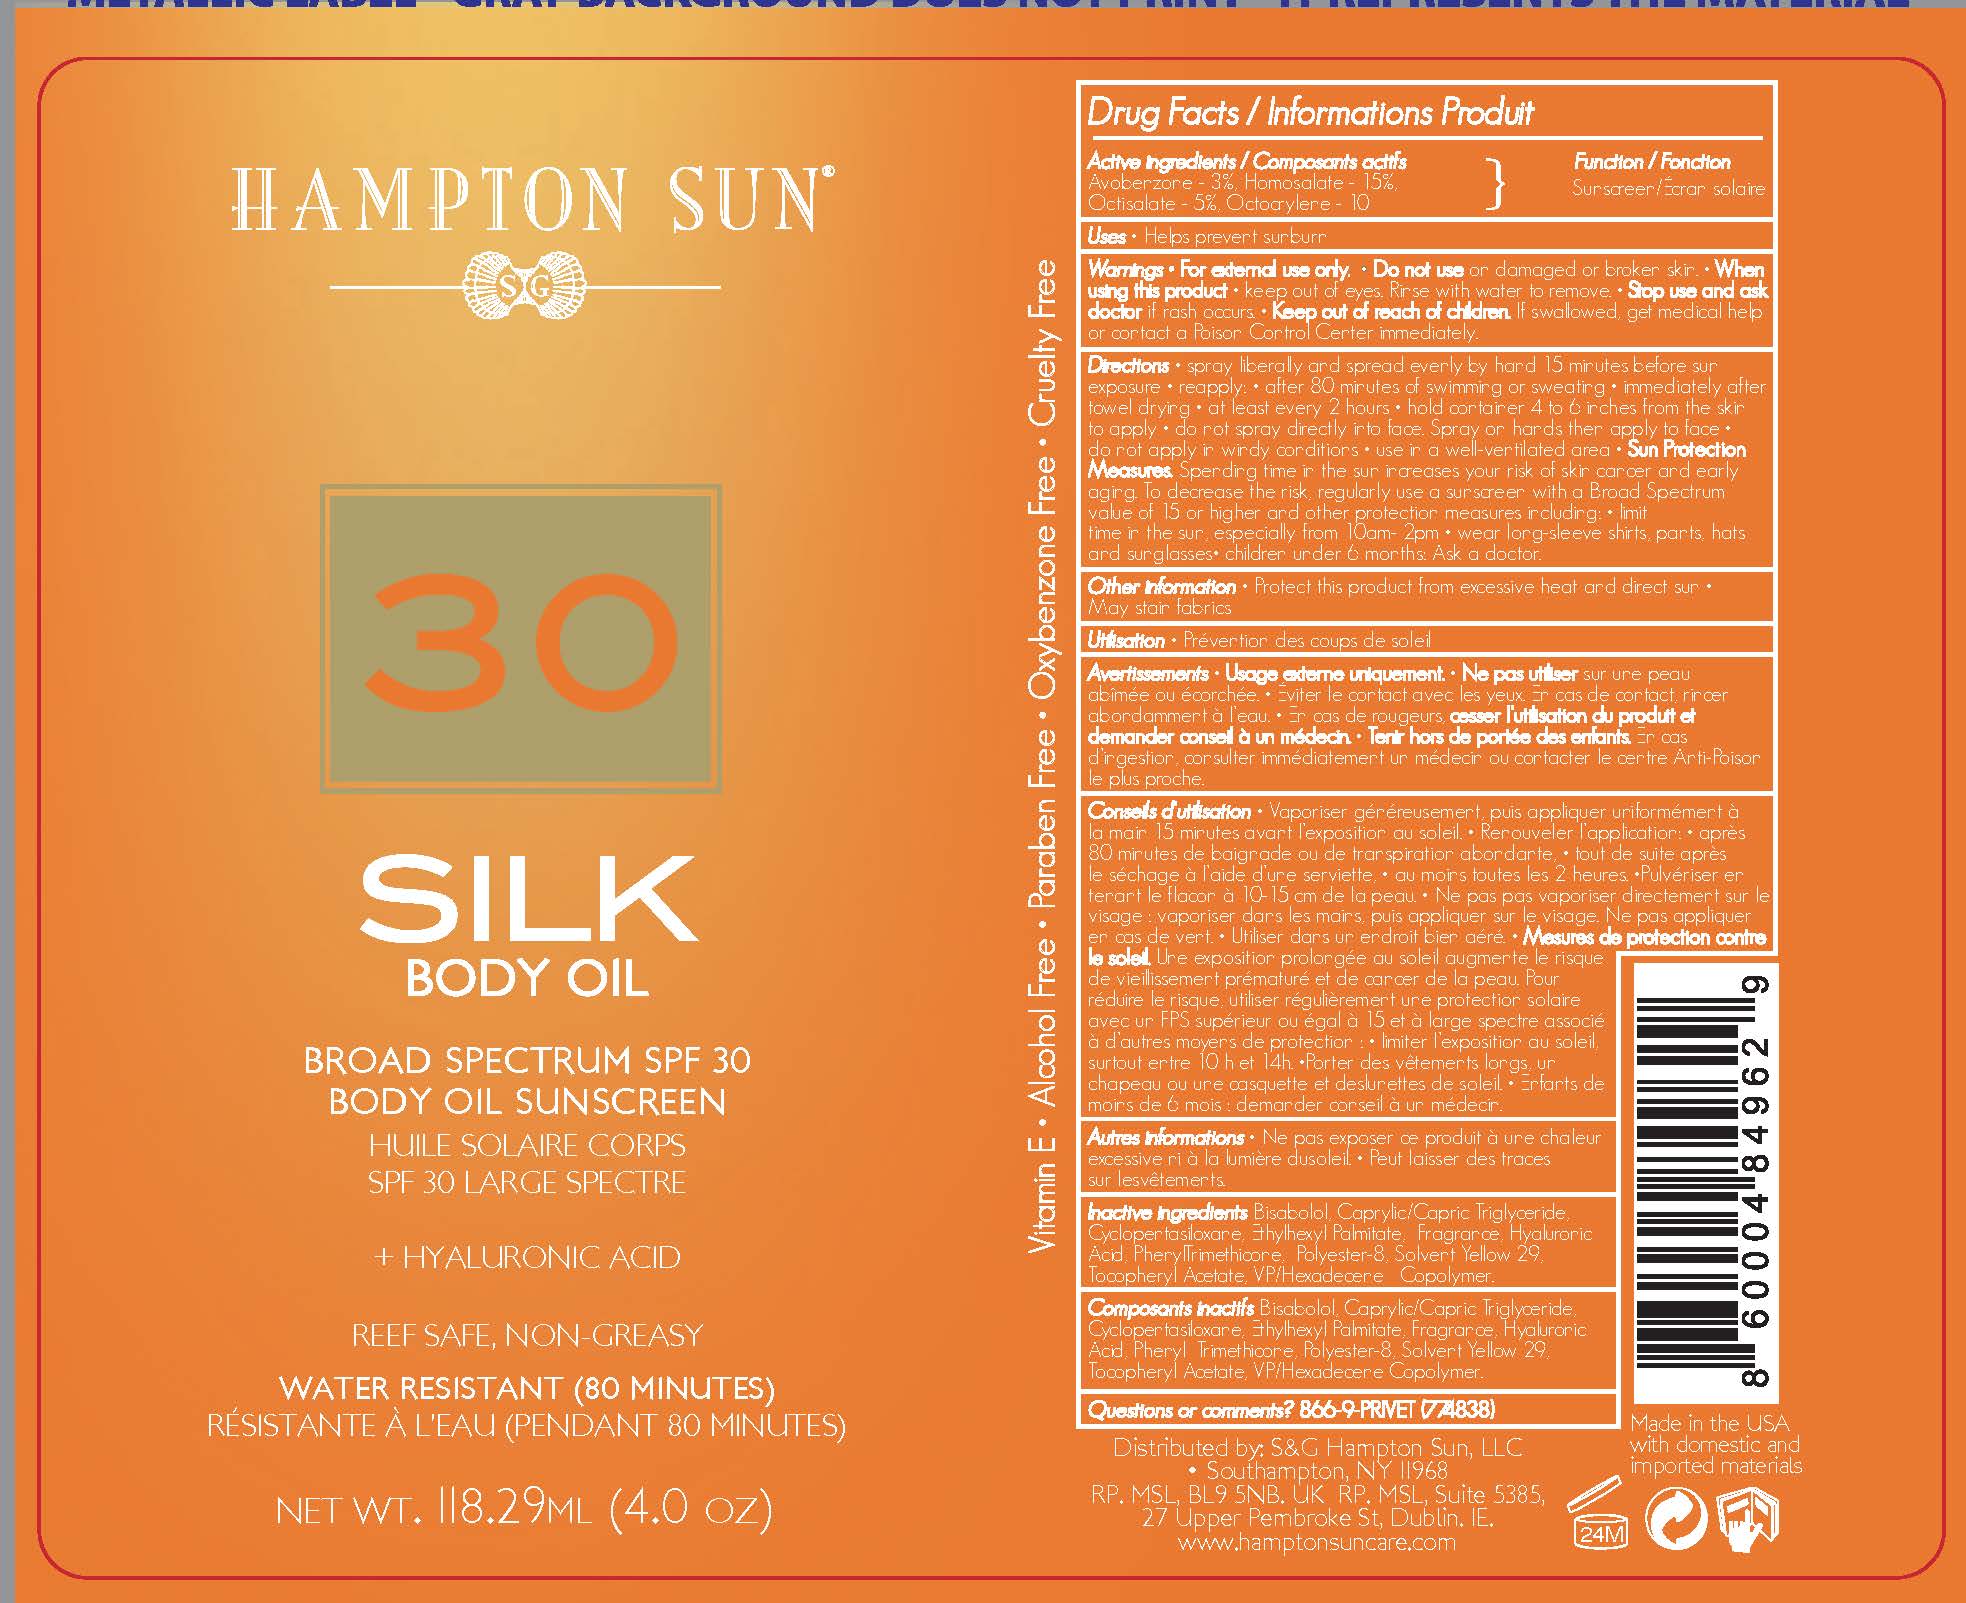 Hampton Sun SPF 30 Silk